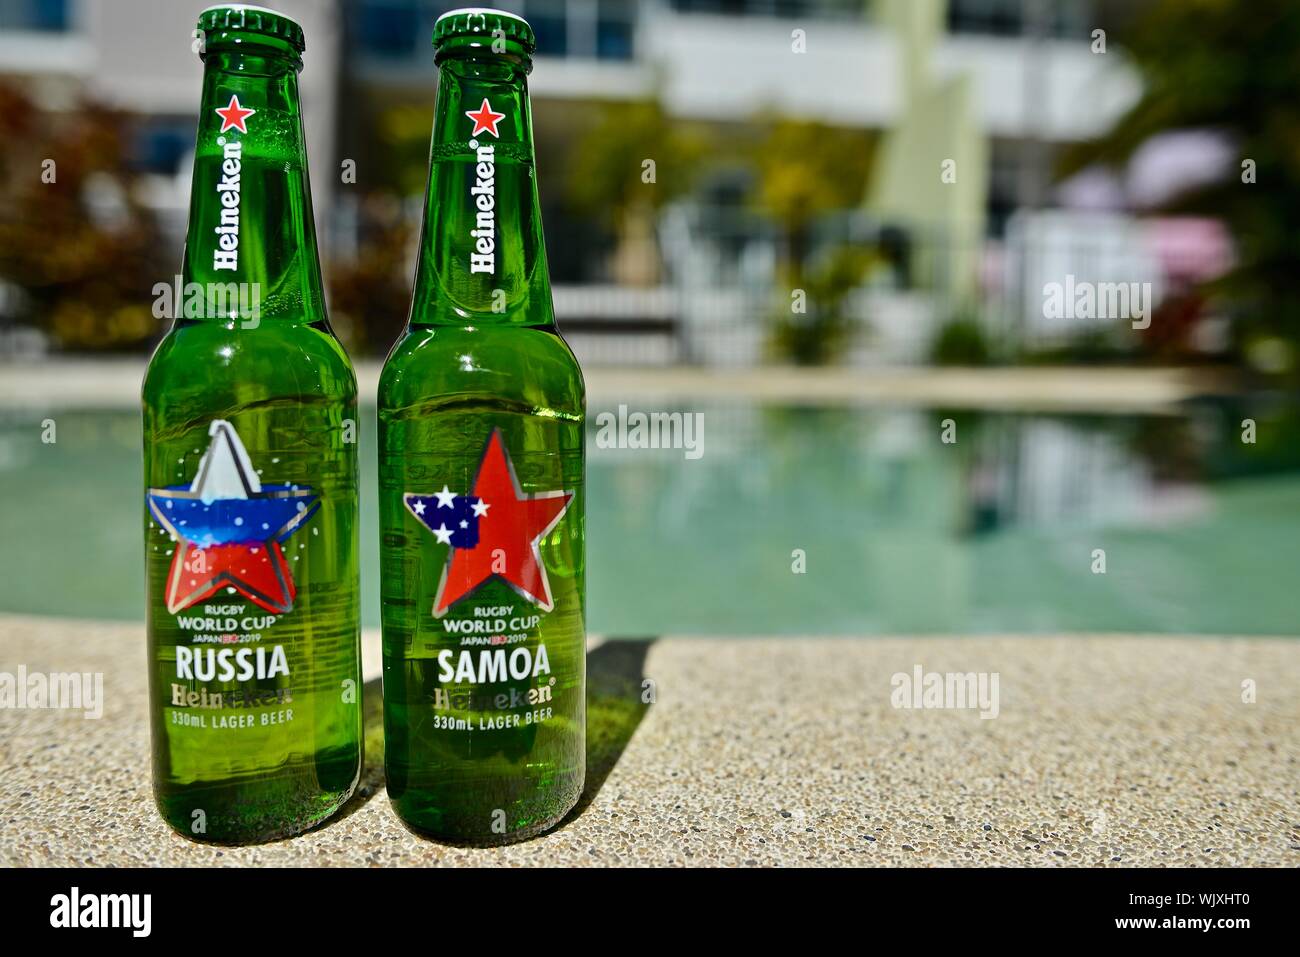 Russia versus Samoa, Heineken 2019 Japan Rugby world cup beer bottles Stock Photo